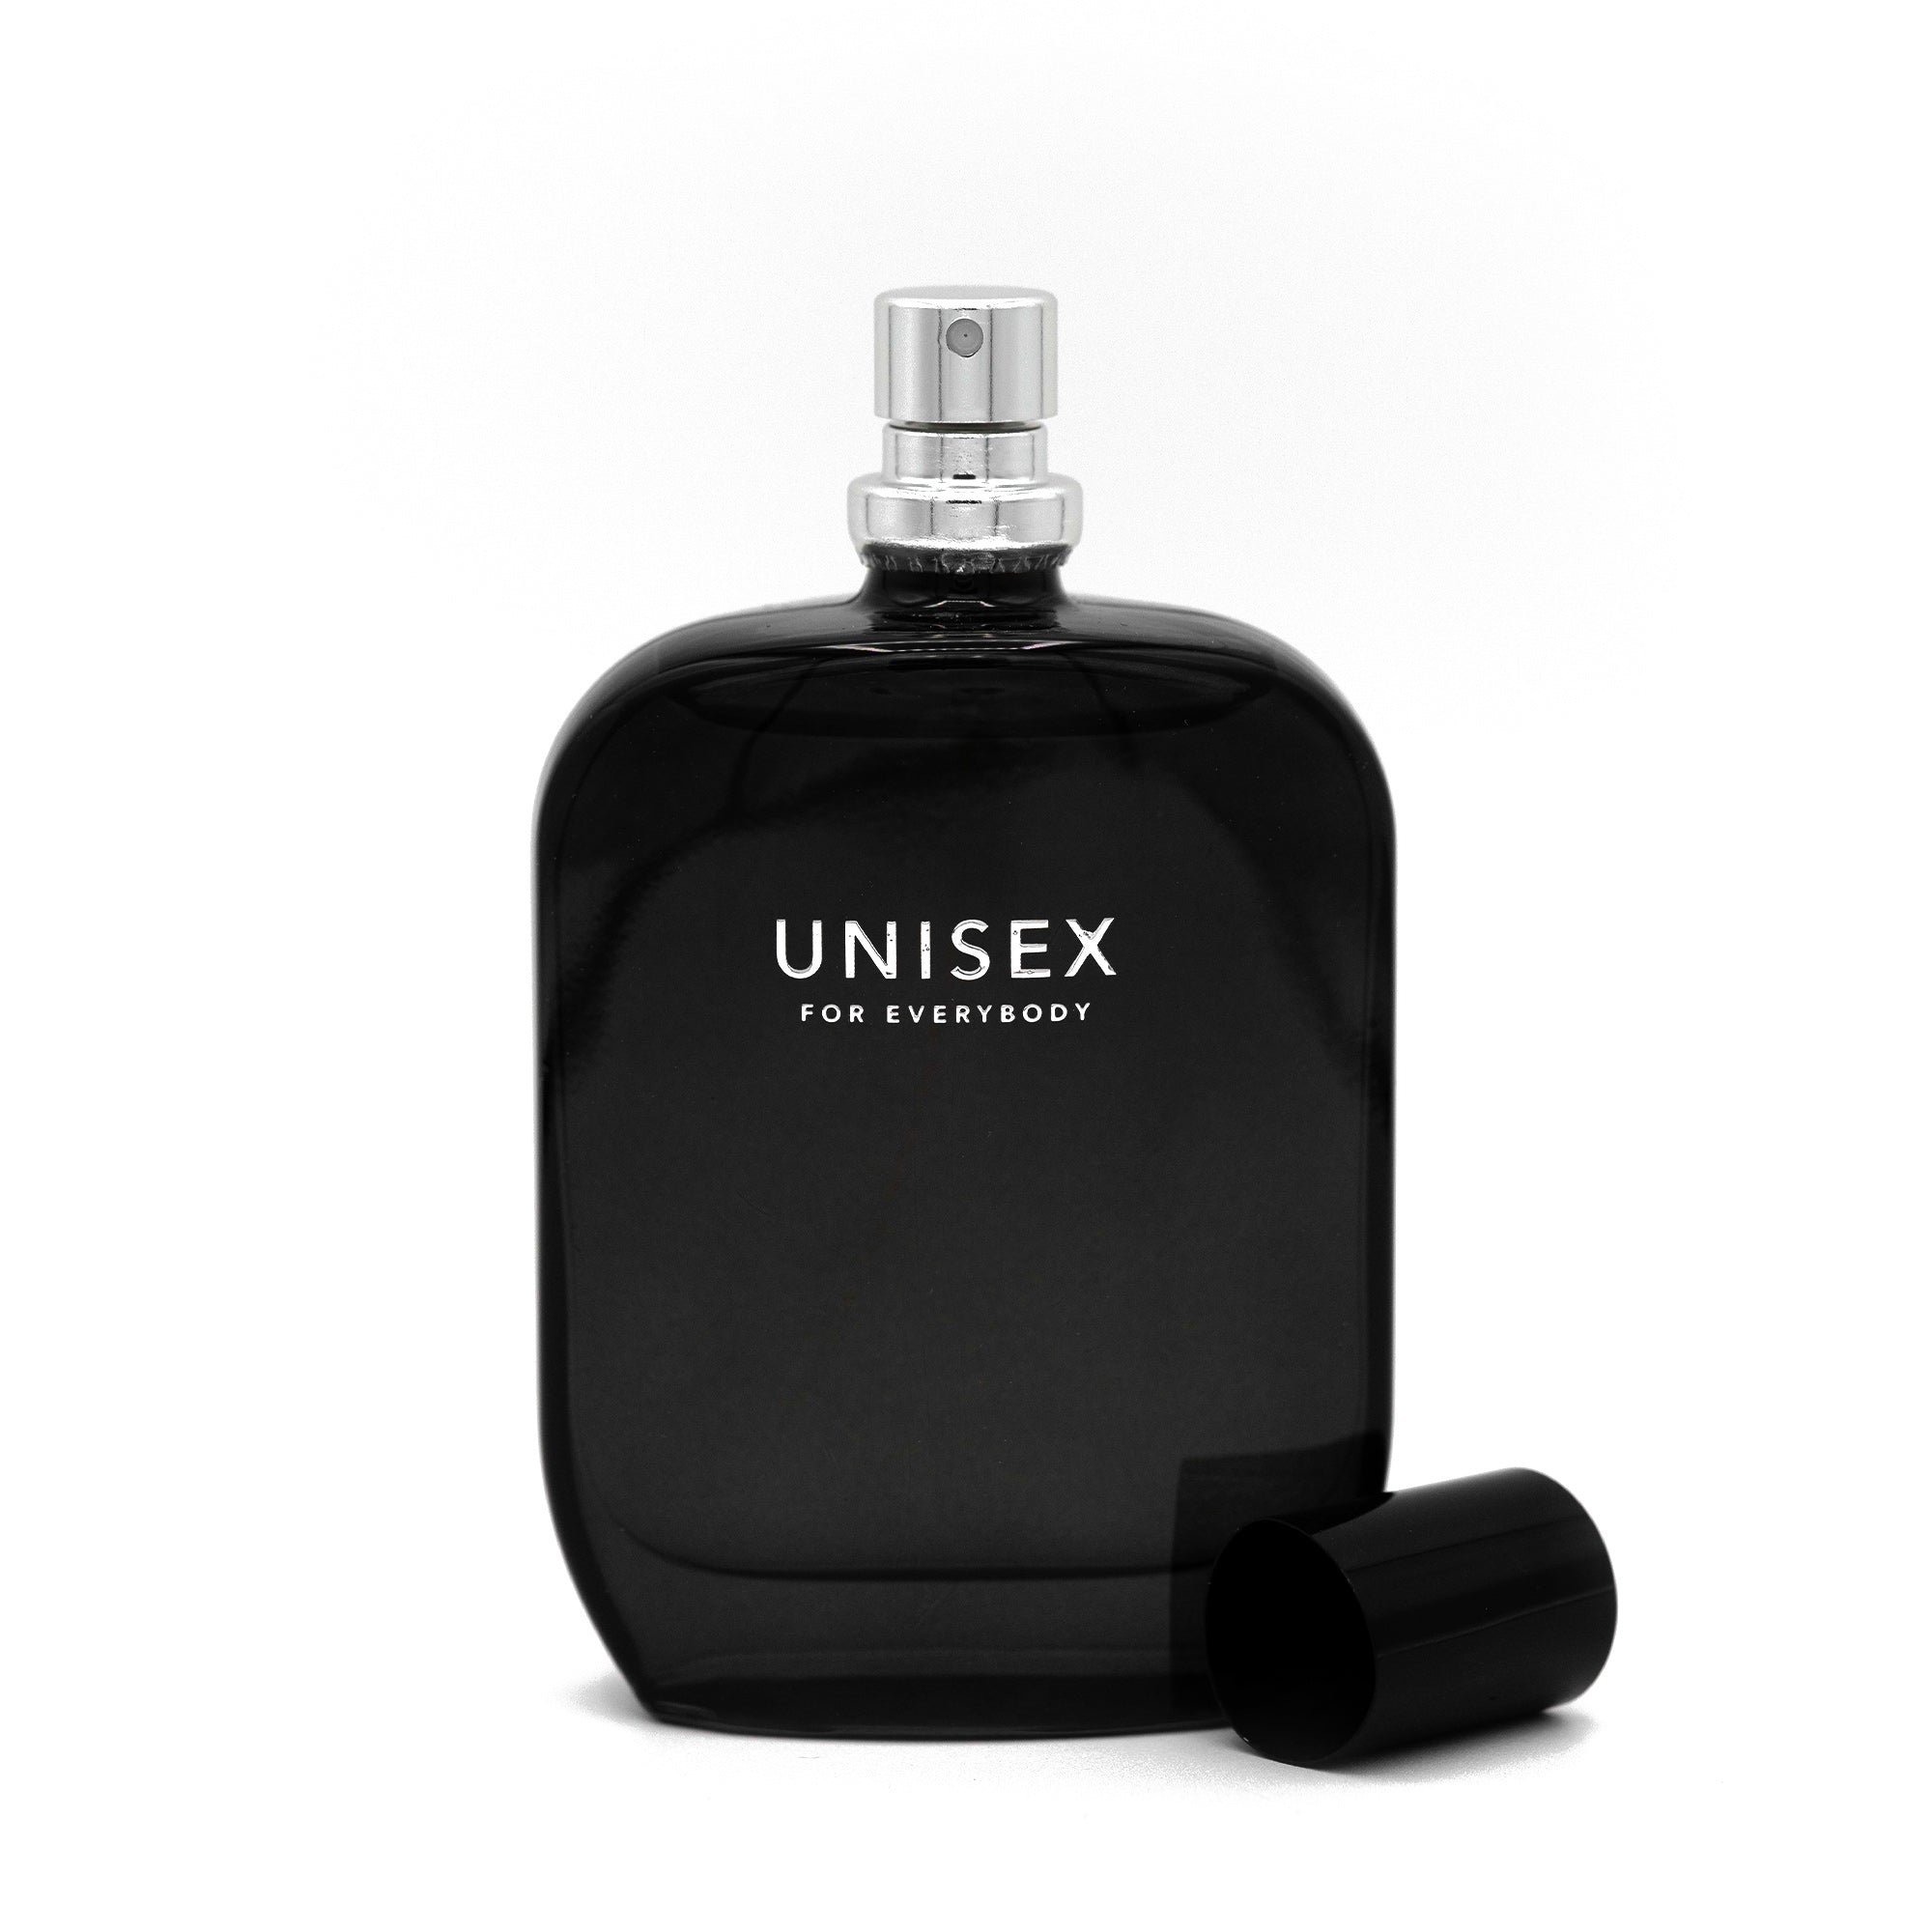 UNISEX for Everybody fragrance bottle 50ml open cap